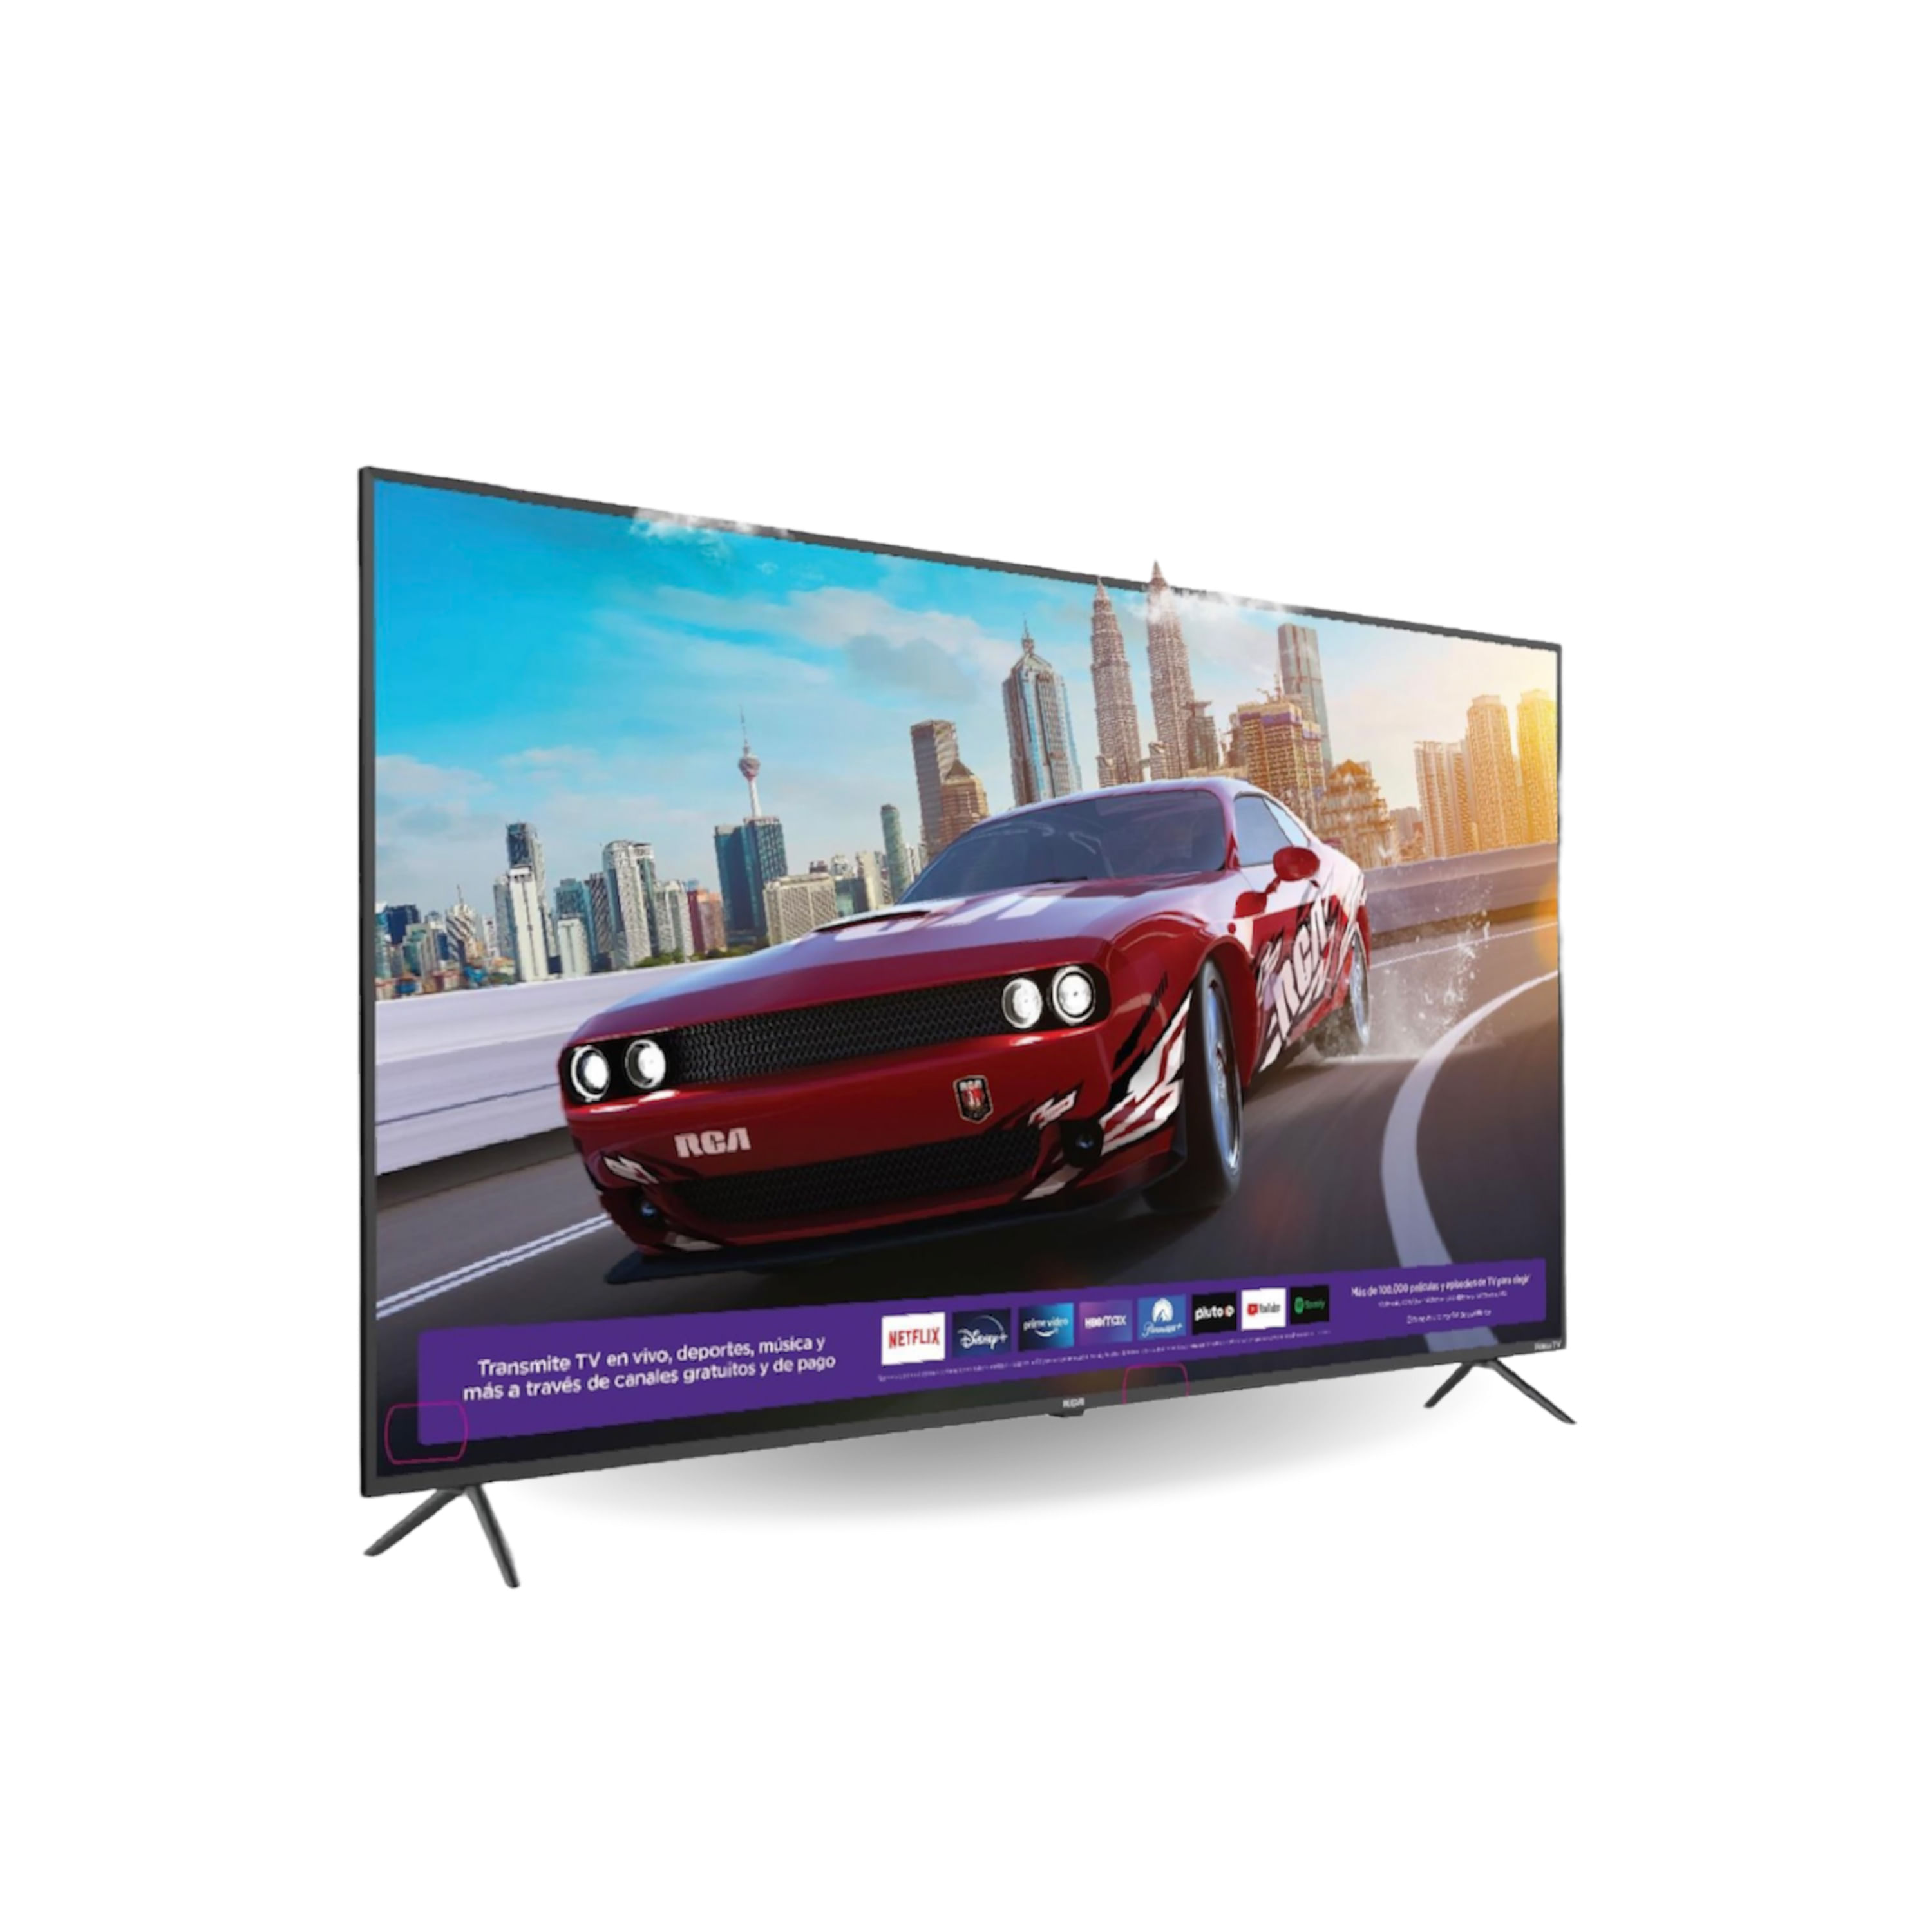 Comprar Pantalla Smart TV Samsung Led De 32 Pulgadas, Modelo:UN32T4300, Walmart Guatemala - Maxi Despensa